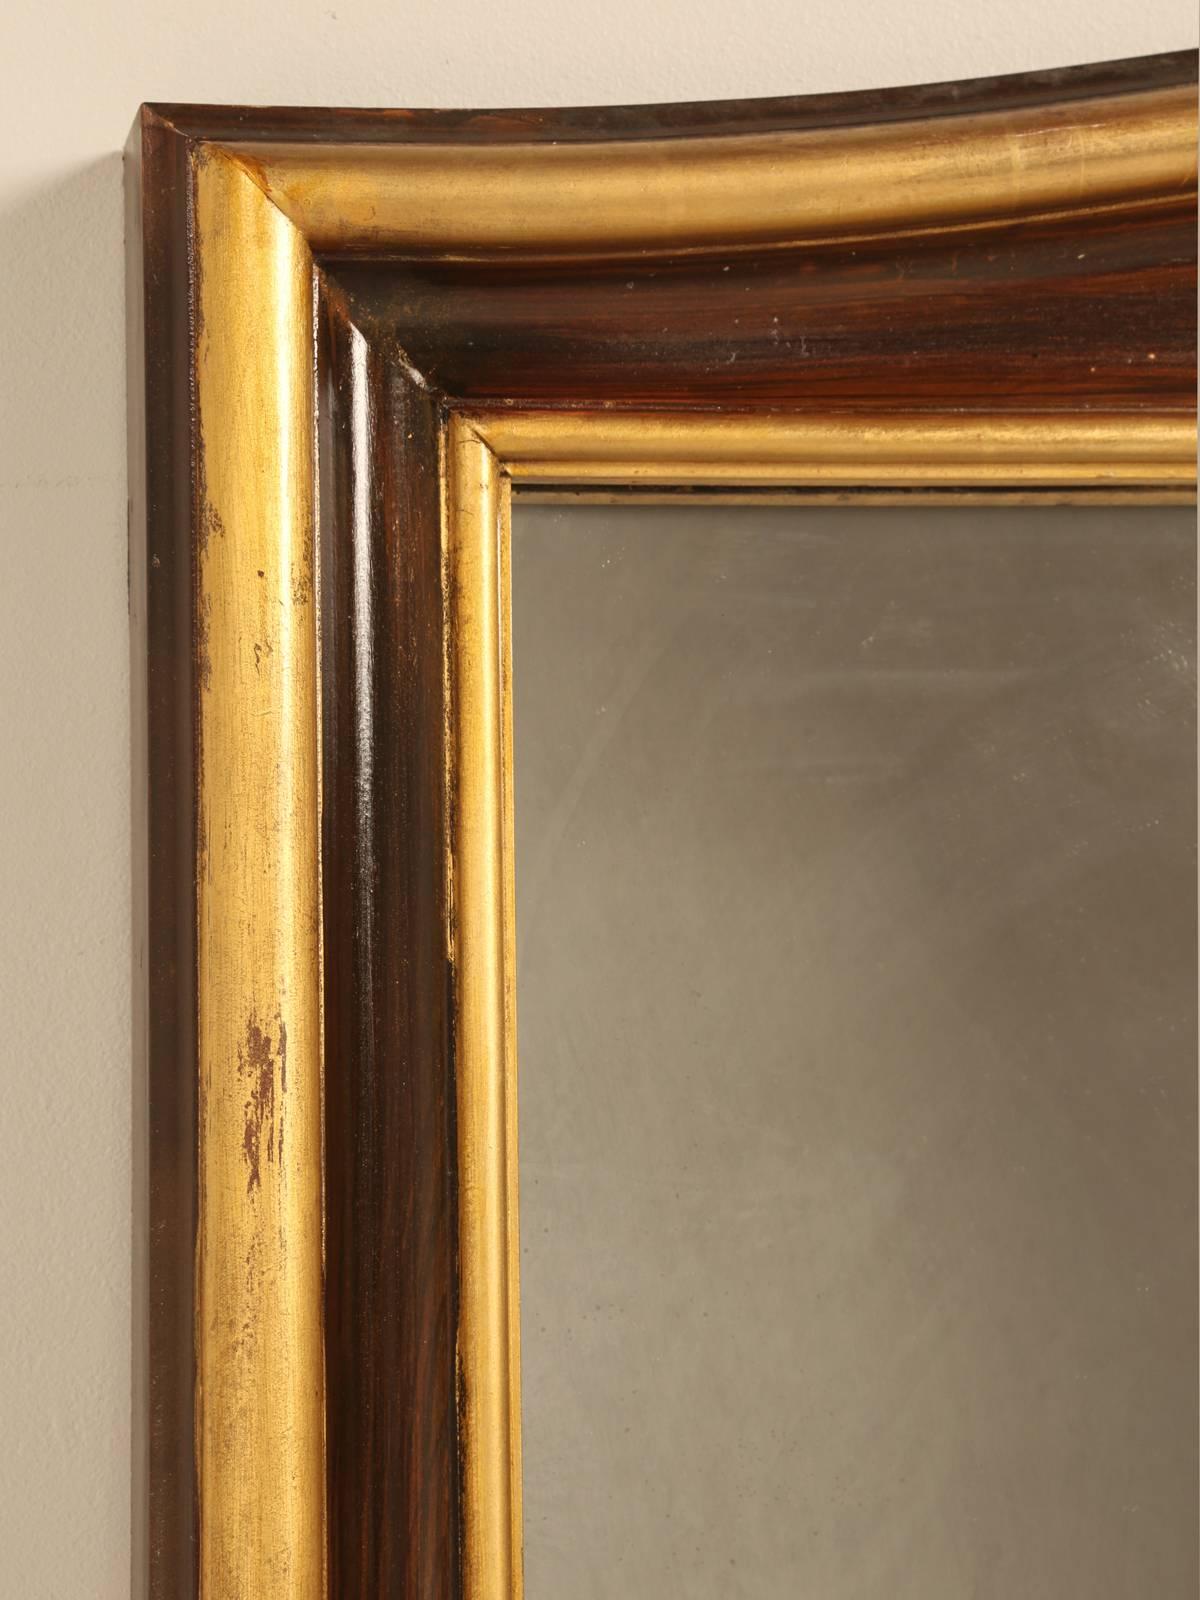 Encadré dans ce que nous croyons être à l'origine des cantonnières françaises dorées du 19e siècle. Miroir magnifiquement sculpté et détaillé dans un style rococo et garni de décorations en or véritable 24 carats. Les détails en faux noyer grainé